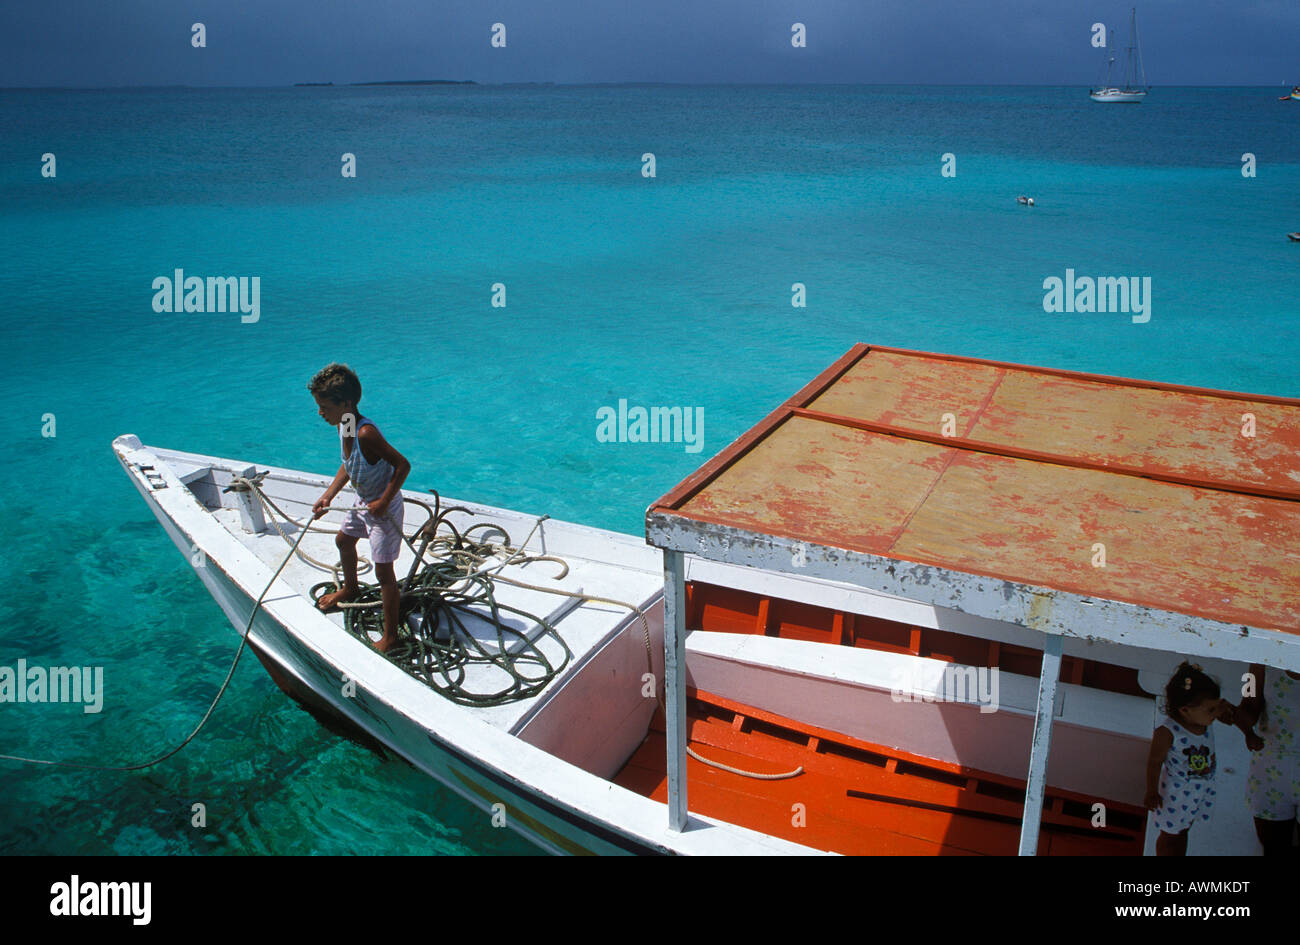 Bateau de pêche au large de la côte de l'île Cayo Crasqui, Islas de Los Roques, Venezuela, Caraïbes Banque D'Images